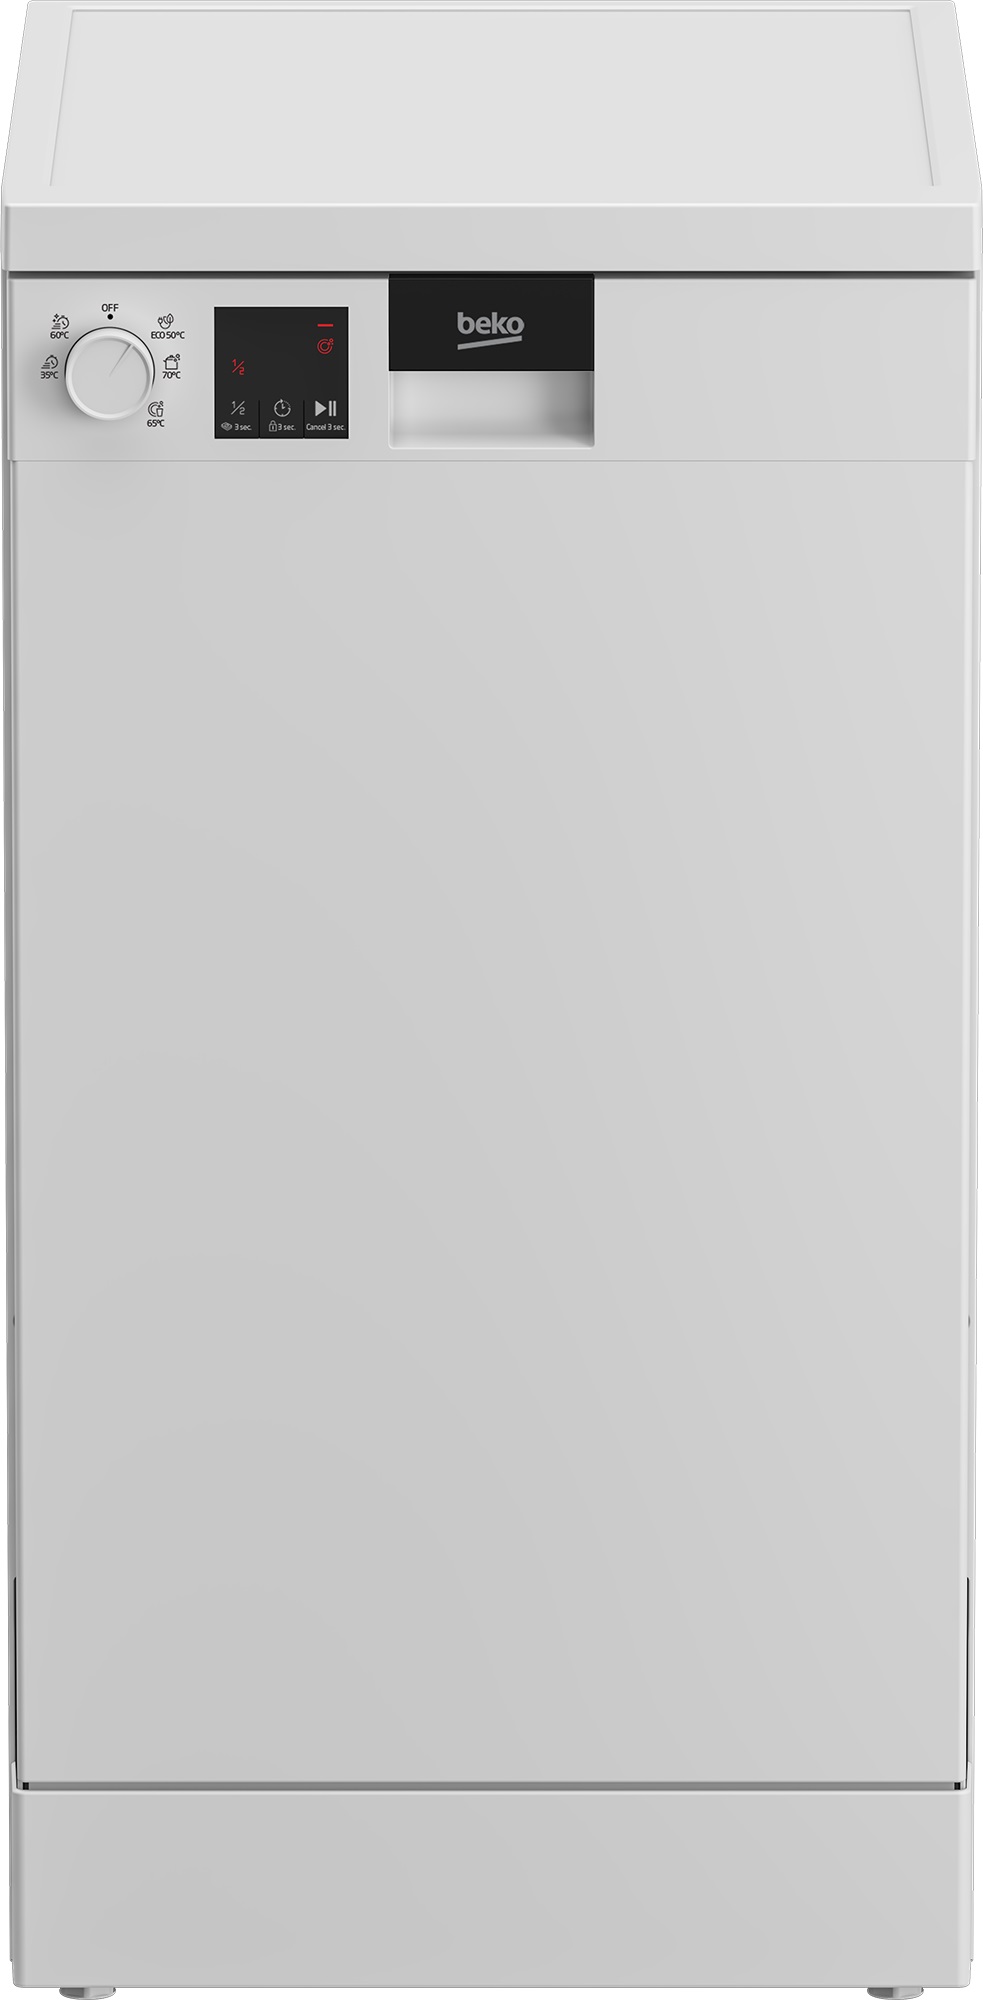 Посудомоечная машина Beko DVS050R01W белый встраиваемая посудомоечная машина beko bdin16520q